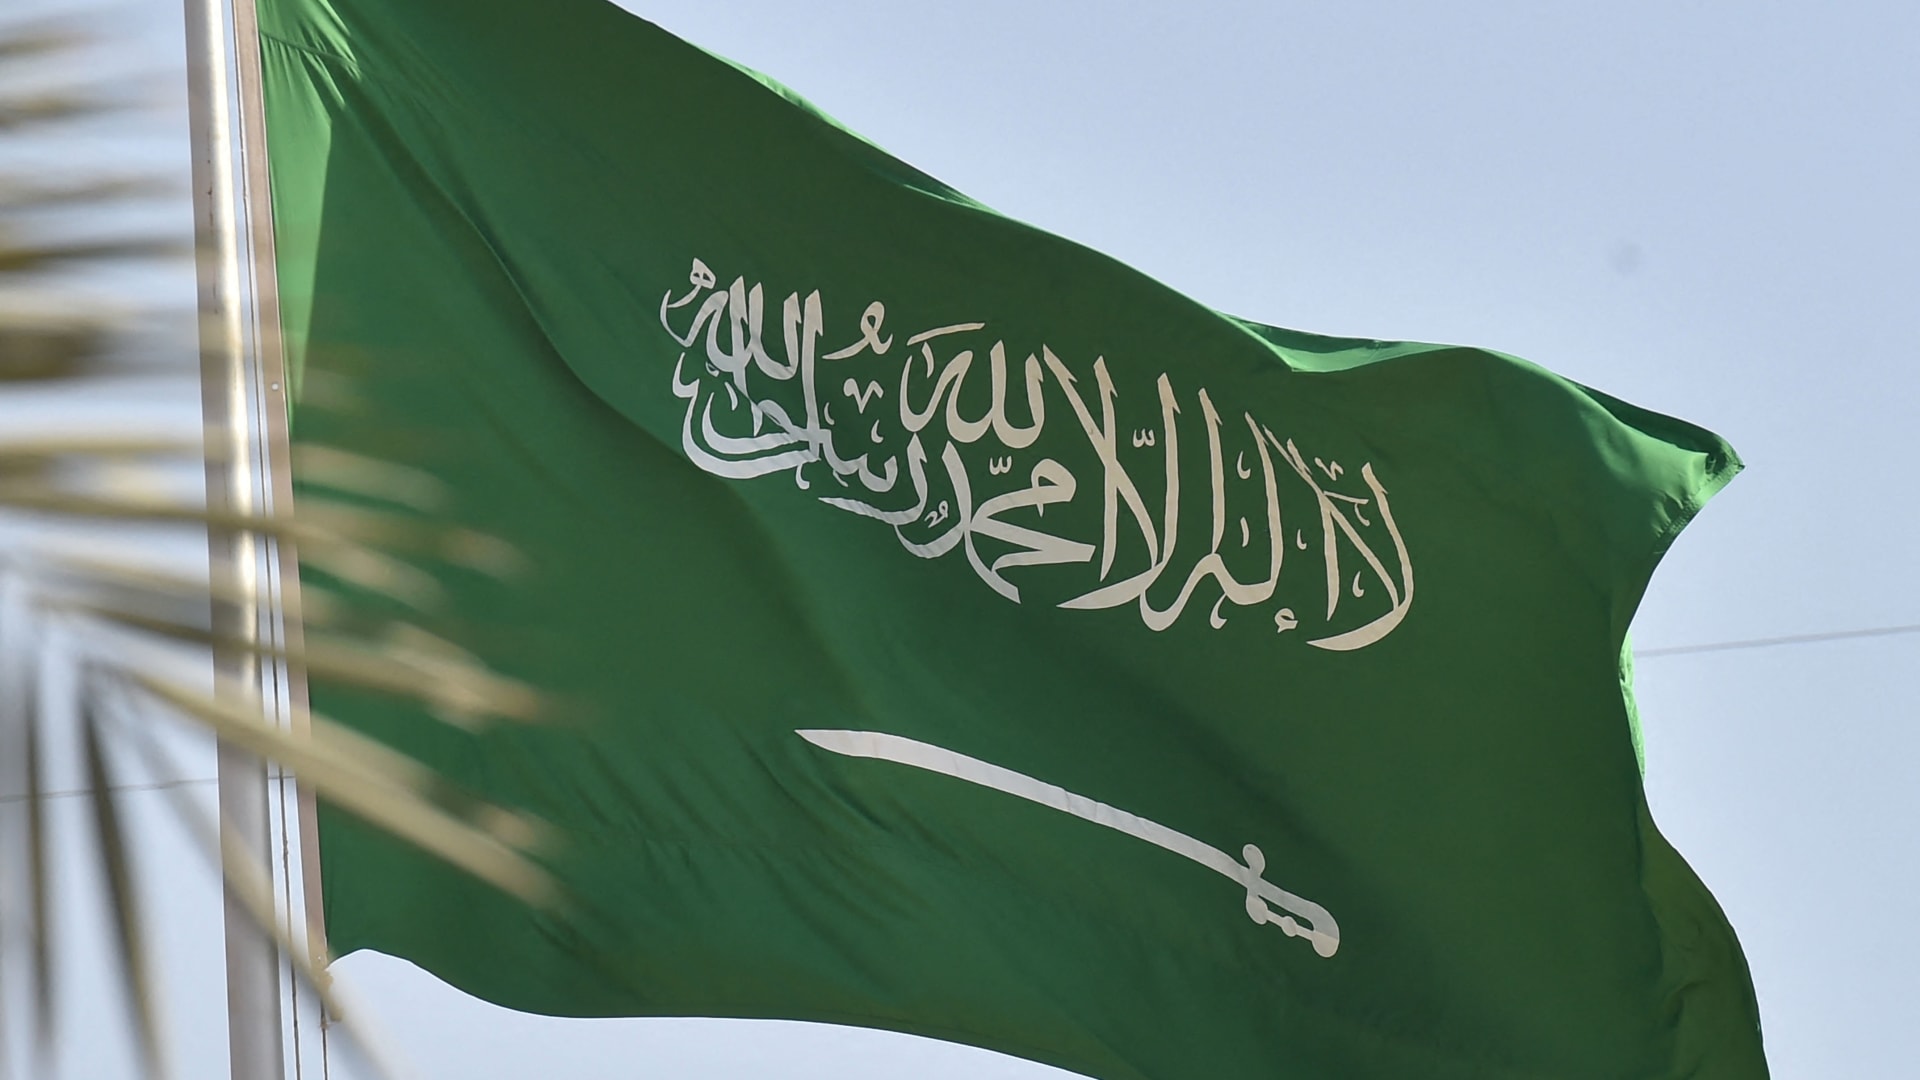 السعودية تعلن "تخريب جماعات مسلحة" مبنى سفارتها في السودان